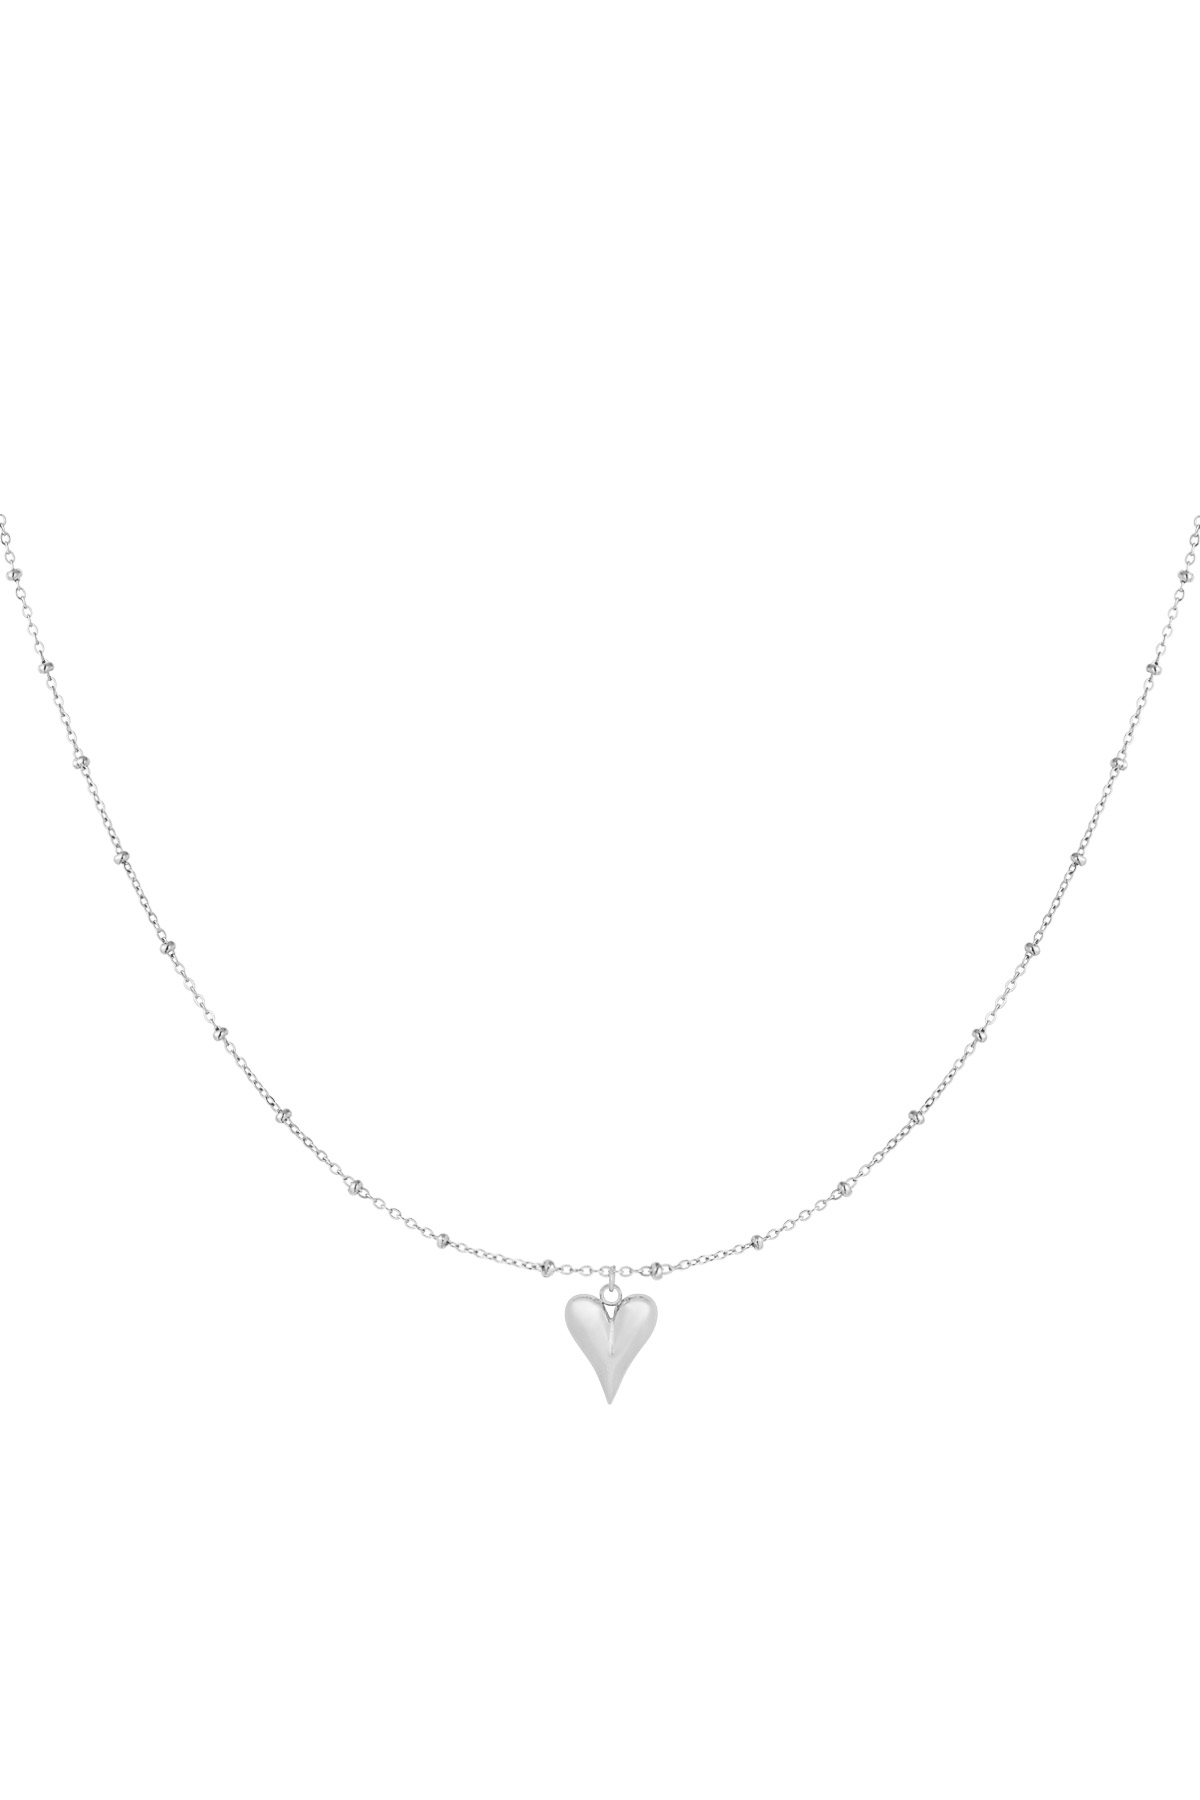 Halskette zeitlose Hingabe - Silber